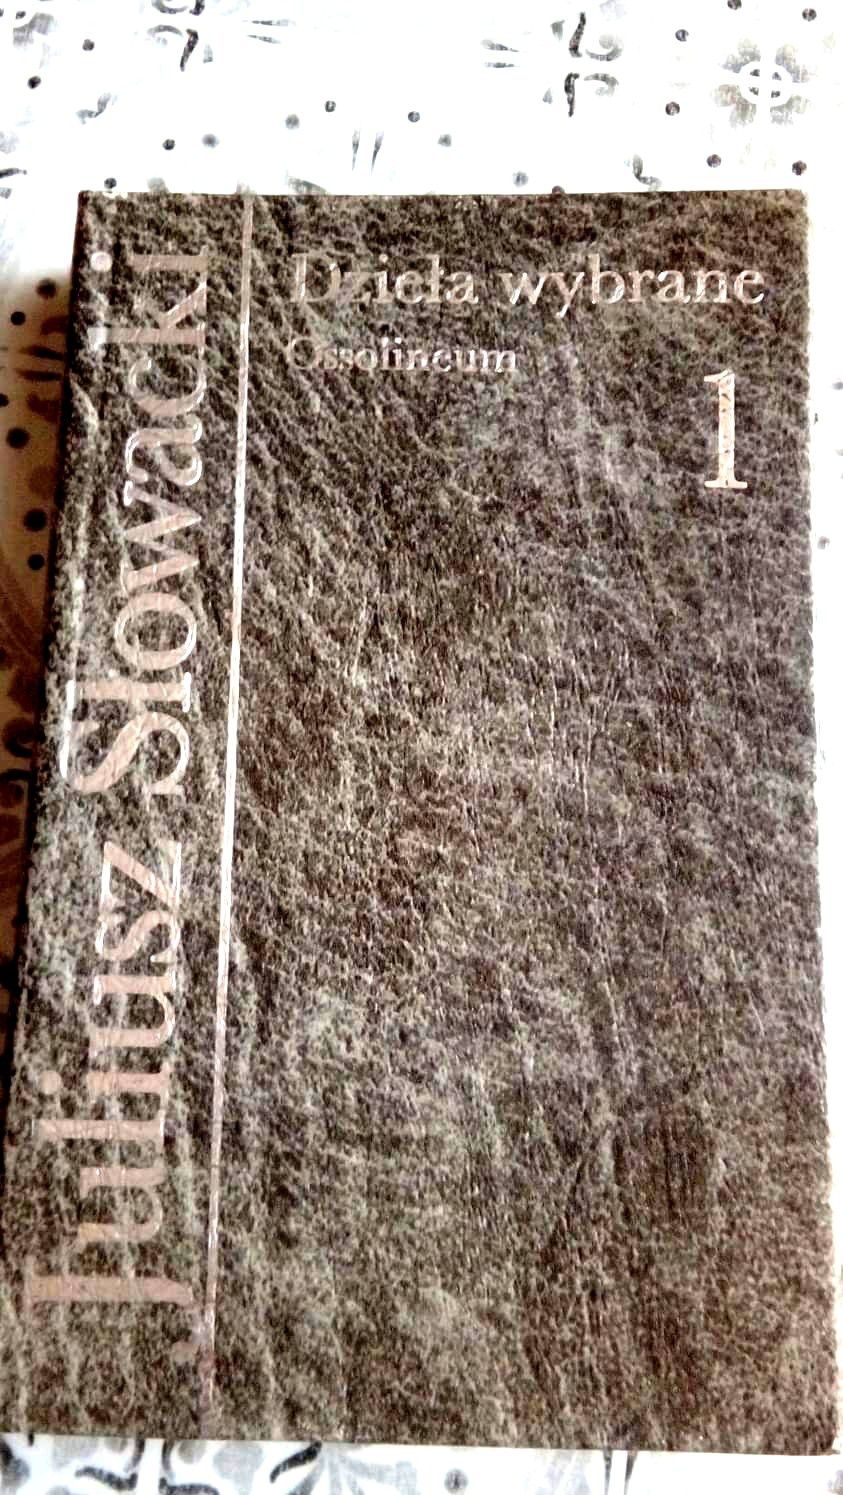 Książka Juliusz Słowacki dzieła wybrane Ossolineum